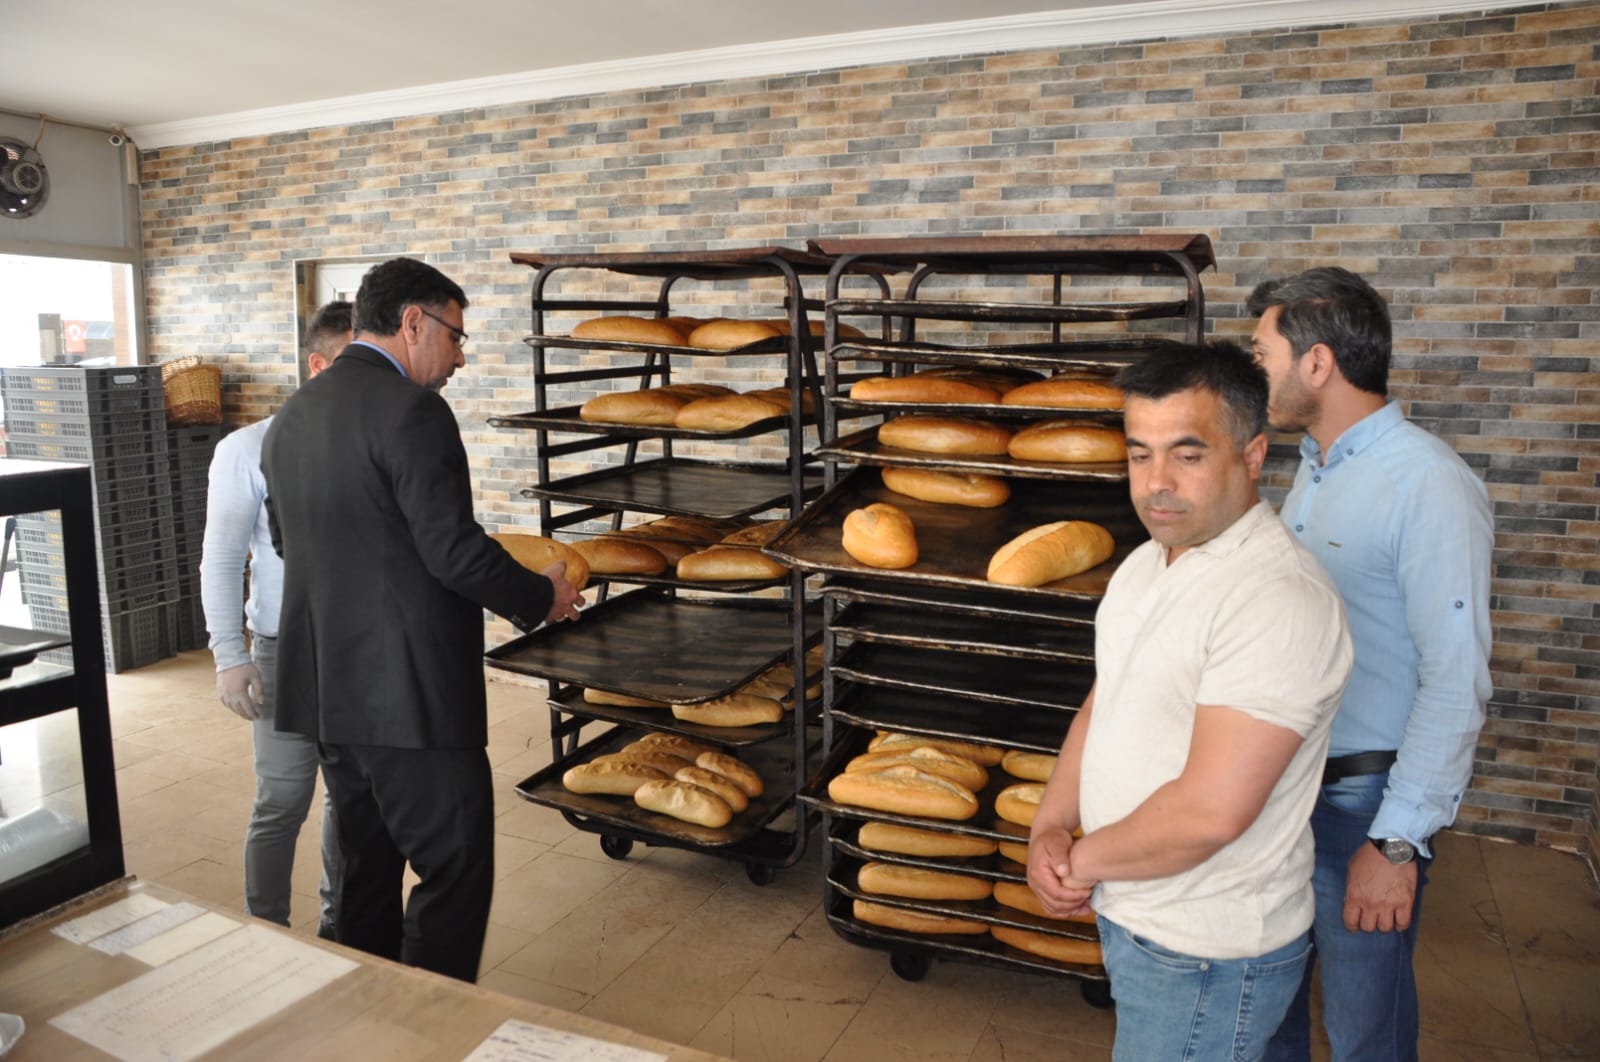 Başkan Av. Fatih Arslan; “Amacımız, vatandaşlarımızın sağlıklı ve kaliteli ekmek tüketmesini sağlamak”